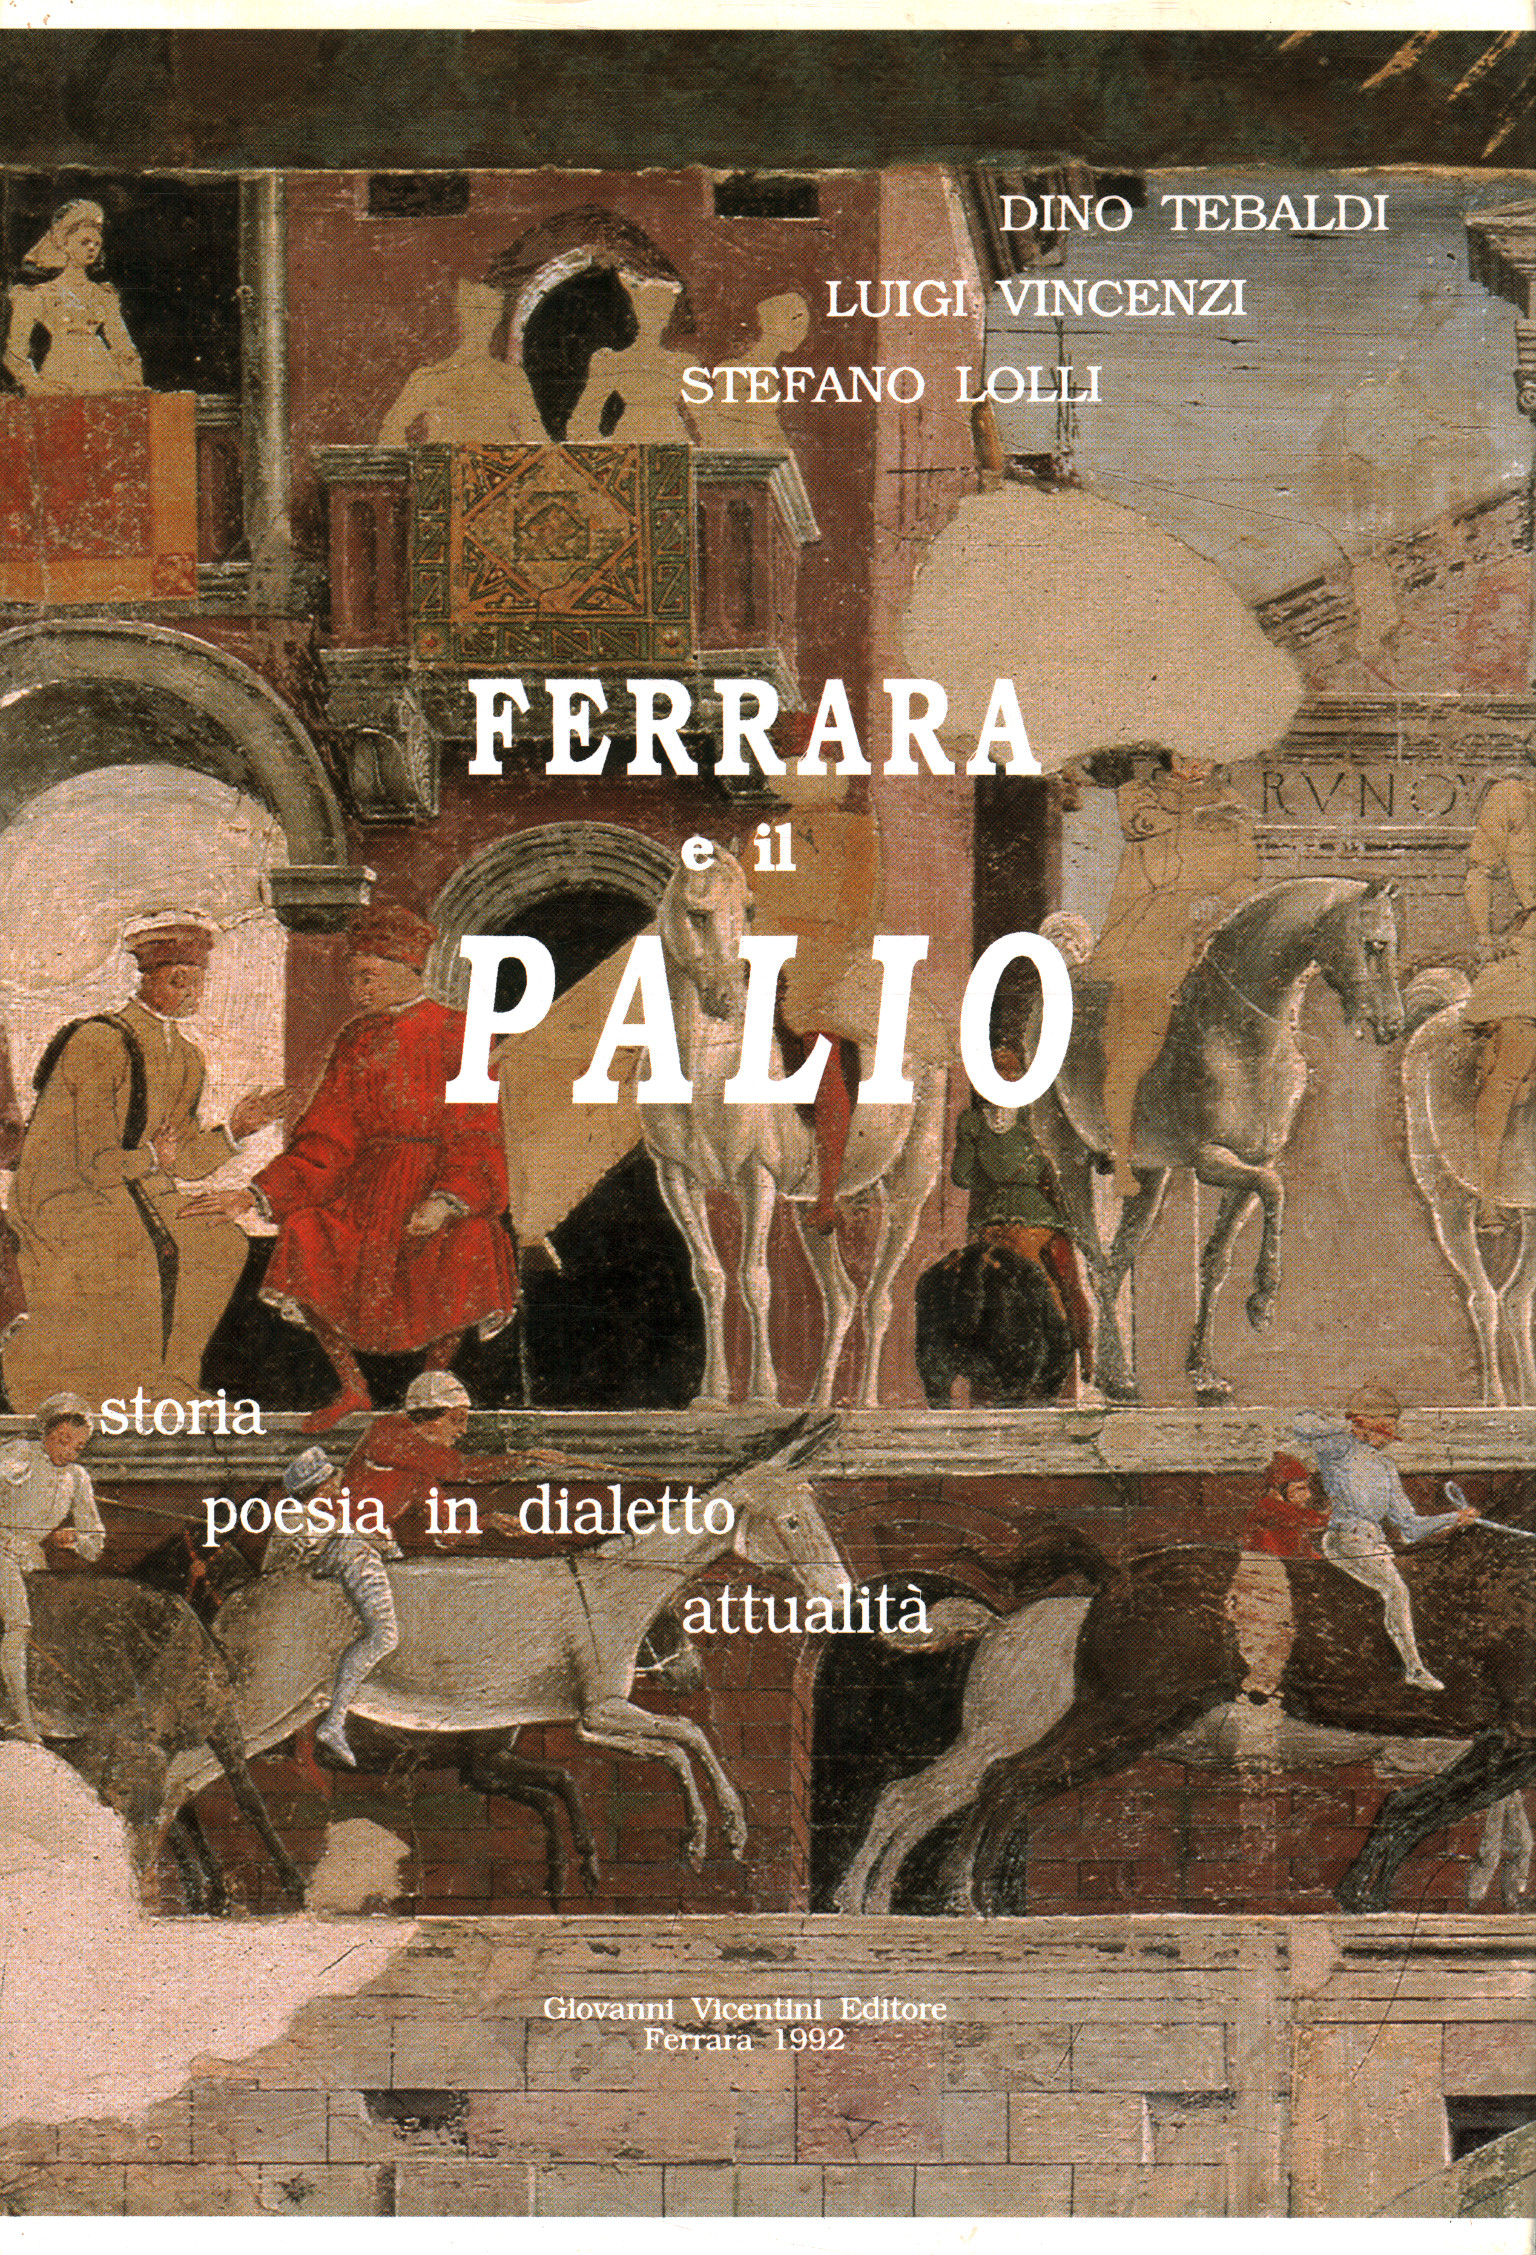 Ferrara und der Palio